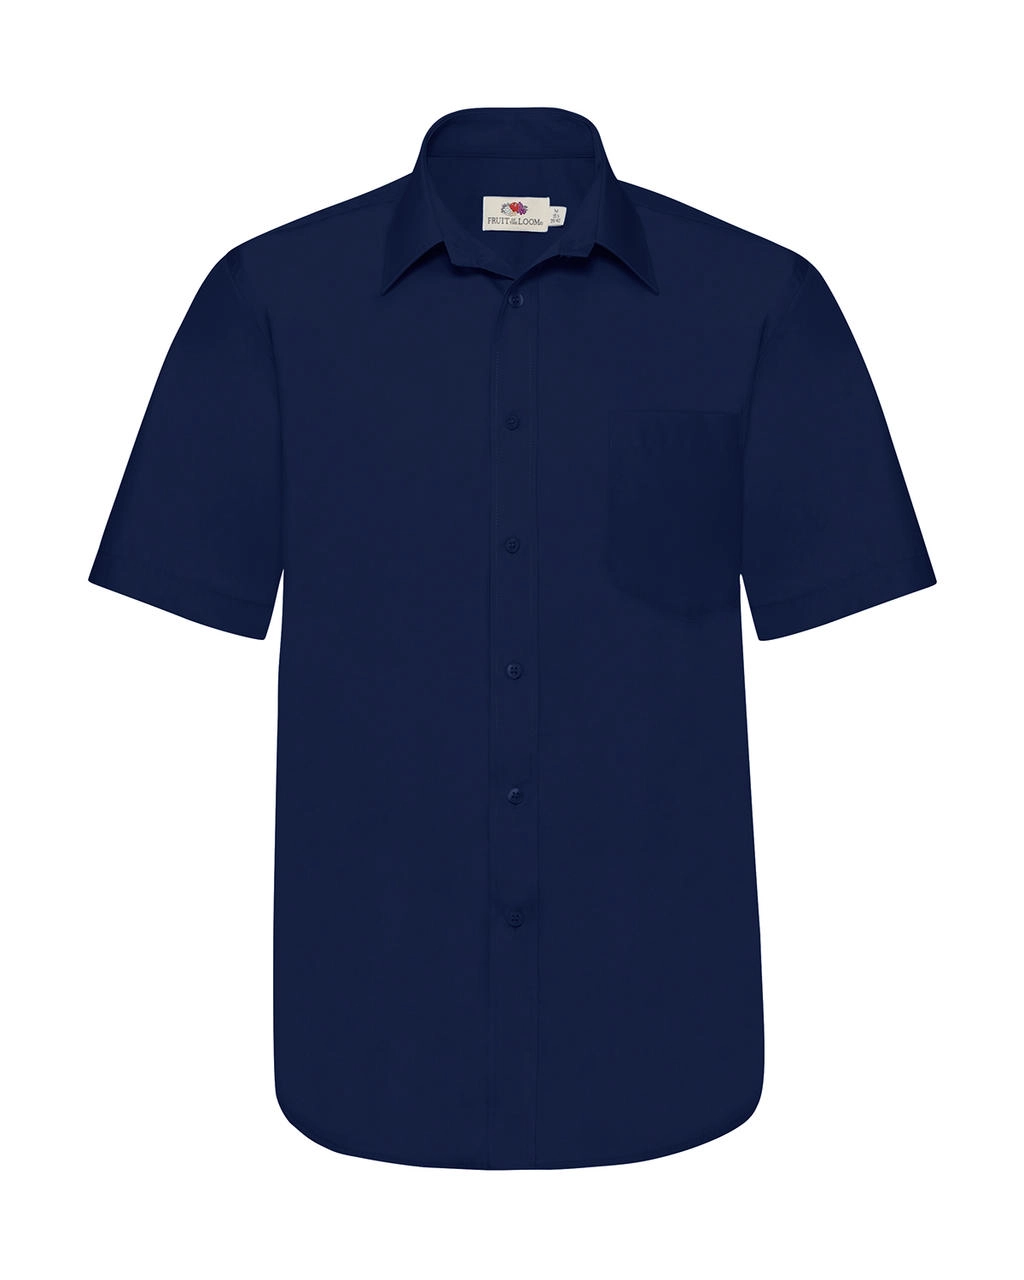 Poplin Shirt zum Besticken und Bedrucken in der Farbe Navy mit Ihren Logo, Schriftzug oder Motiv.